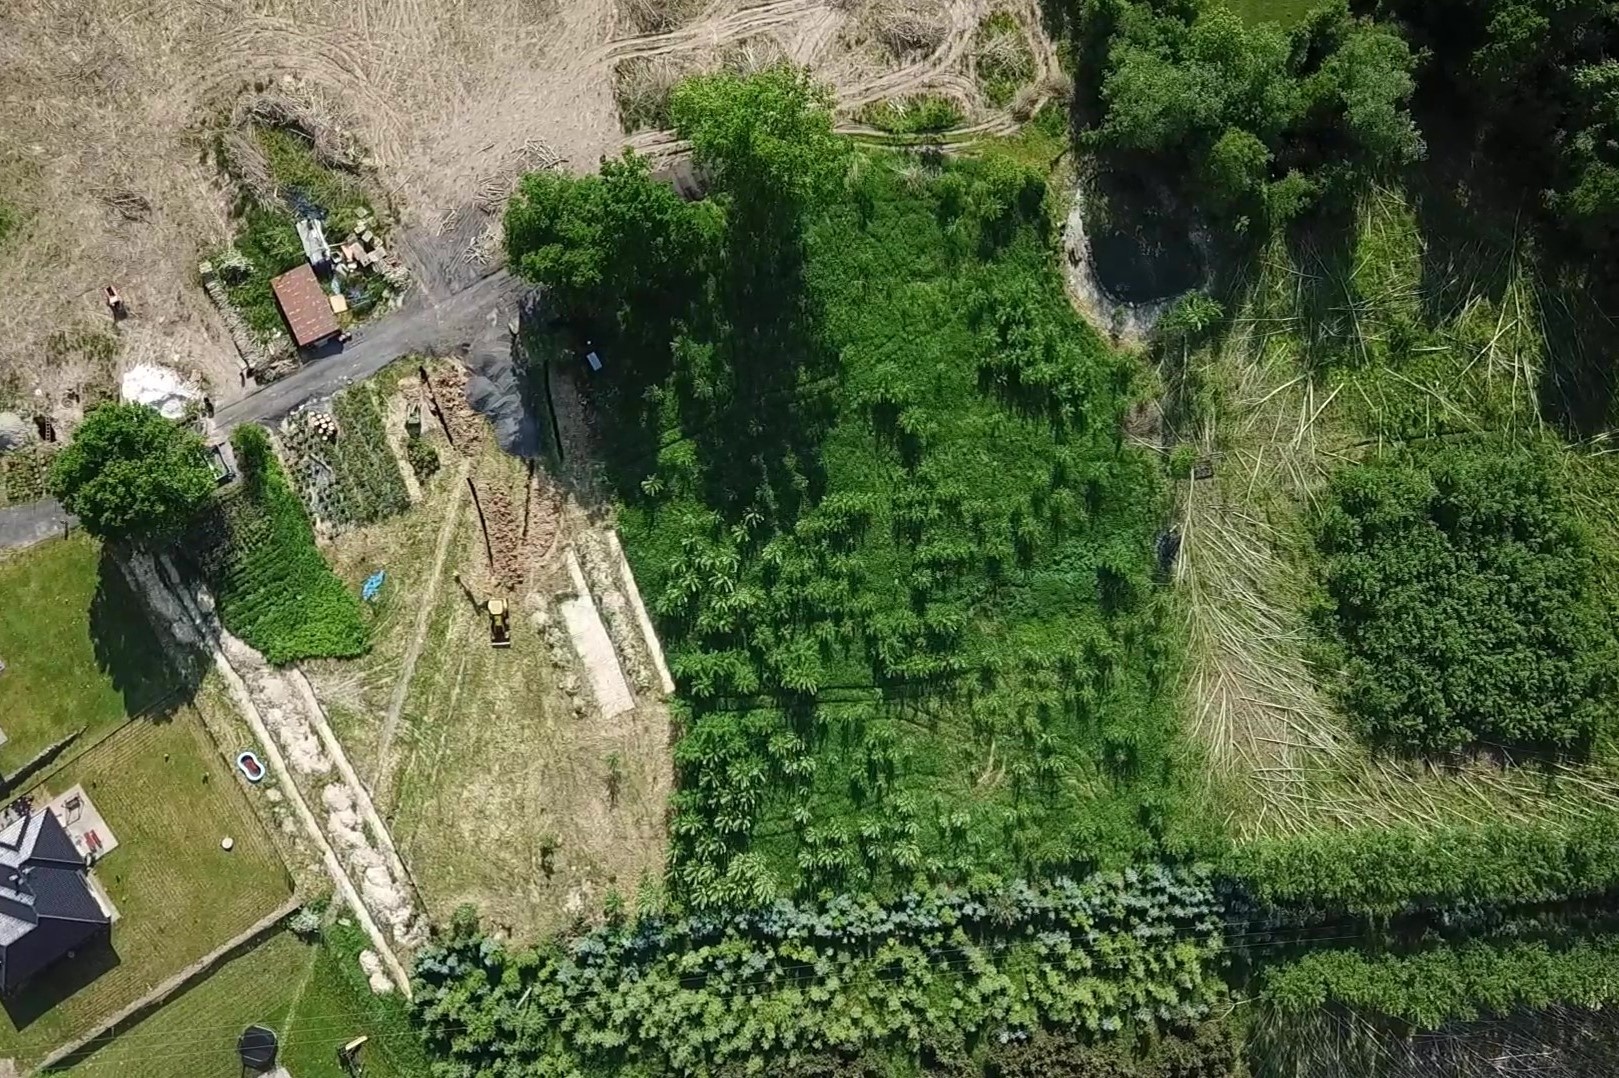 Prodej nestavebního pozemku, zahrady, 1 715 m², Třinec - Nebory